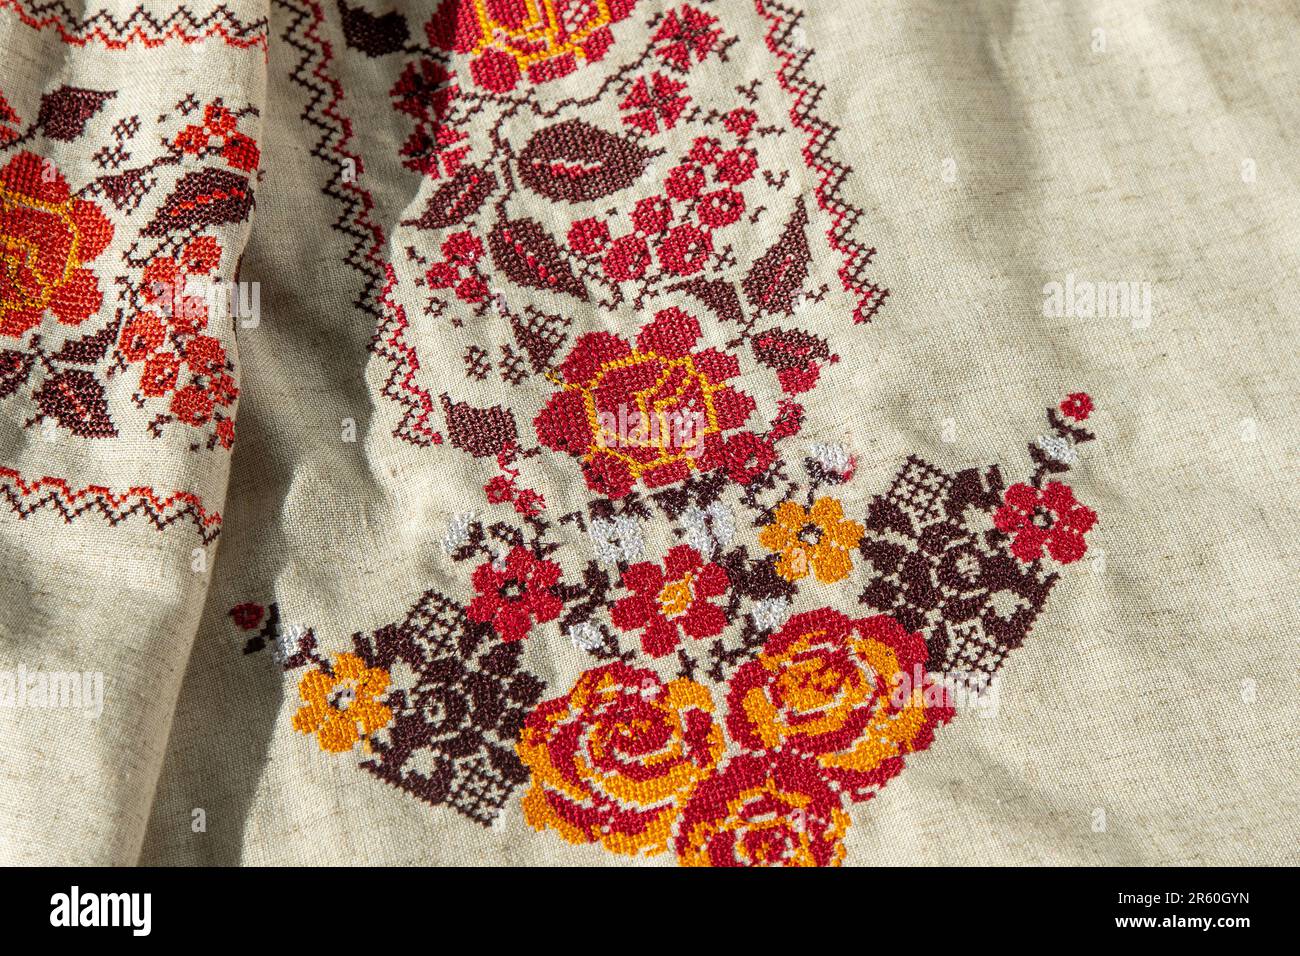 Maglietta ricamata con abiti ucraini. Sfondo rosso arancione e nero. Vyshyvanka è un simbolo dell'Ucraina. Cucitura a croce con ricami. Punto nazionale ucraino. Simbolo dell'abbigliamento tradizionale. Foto Stock